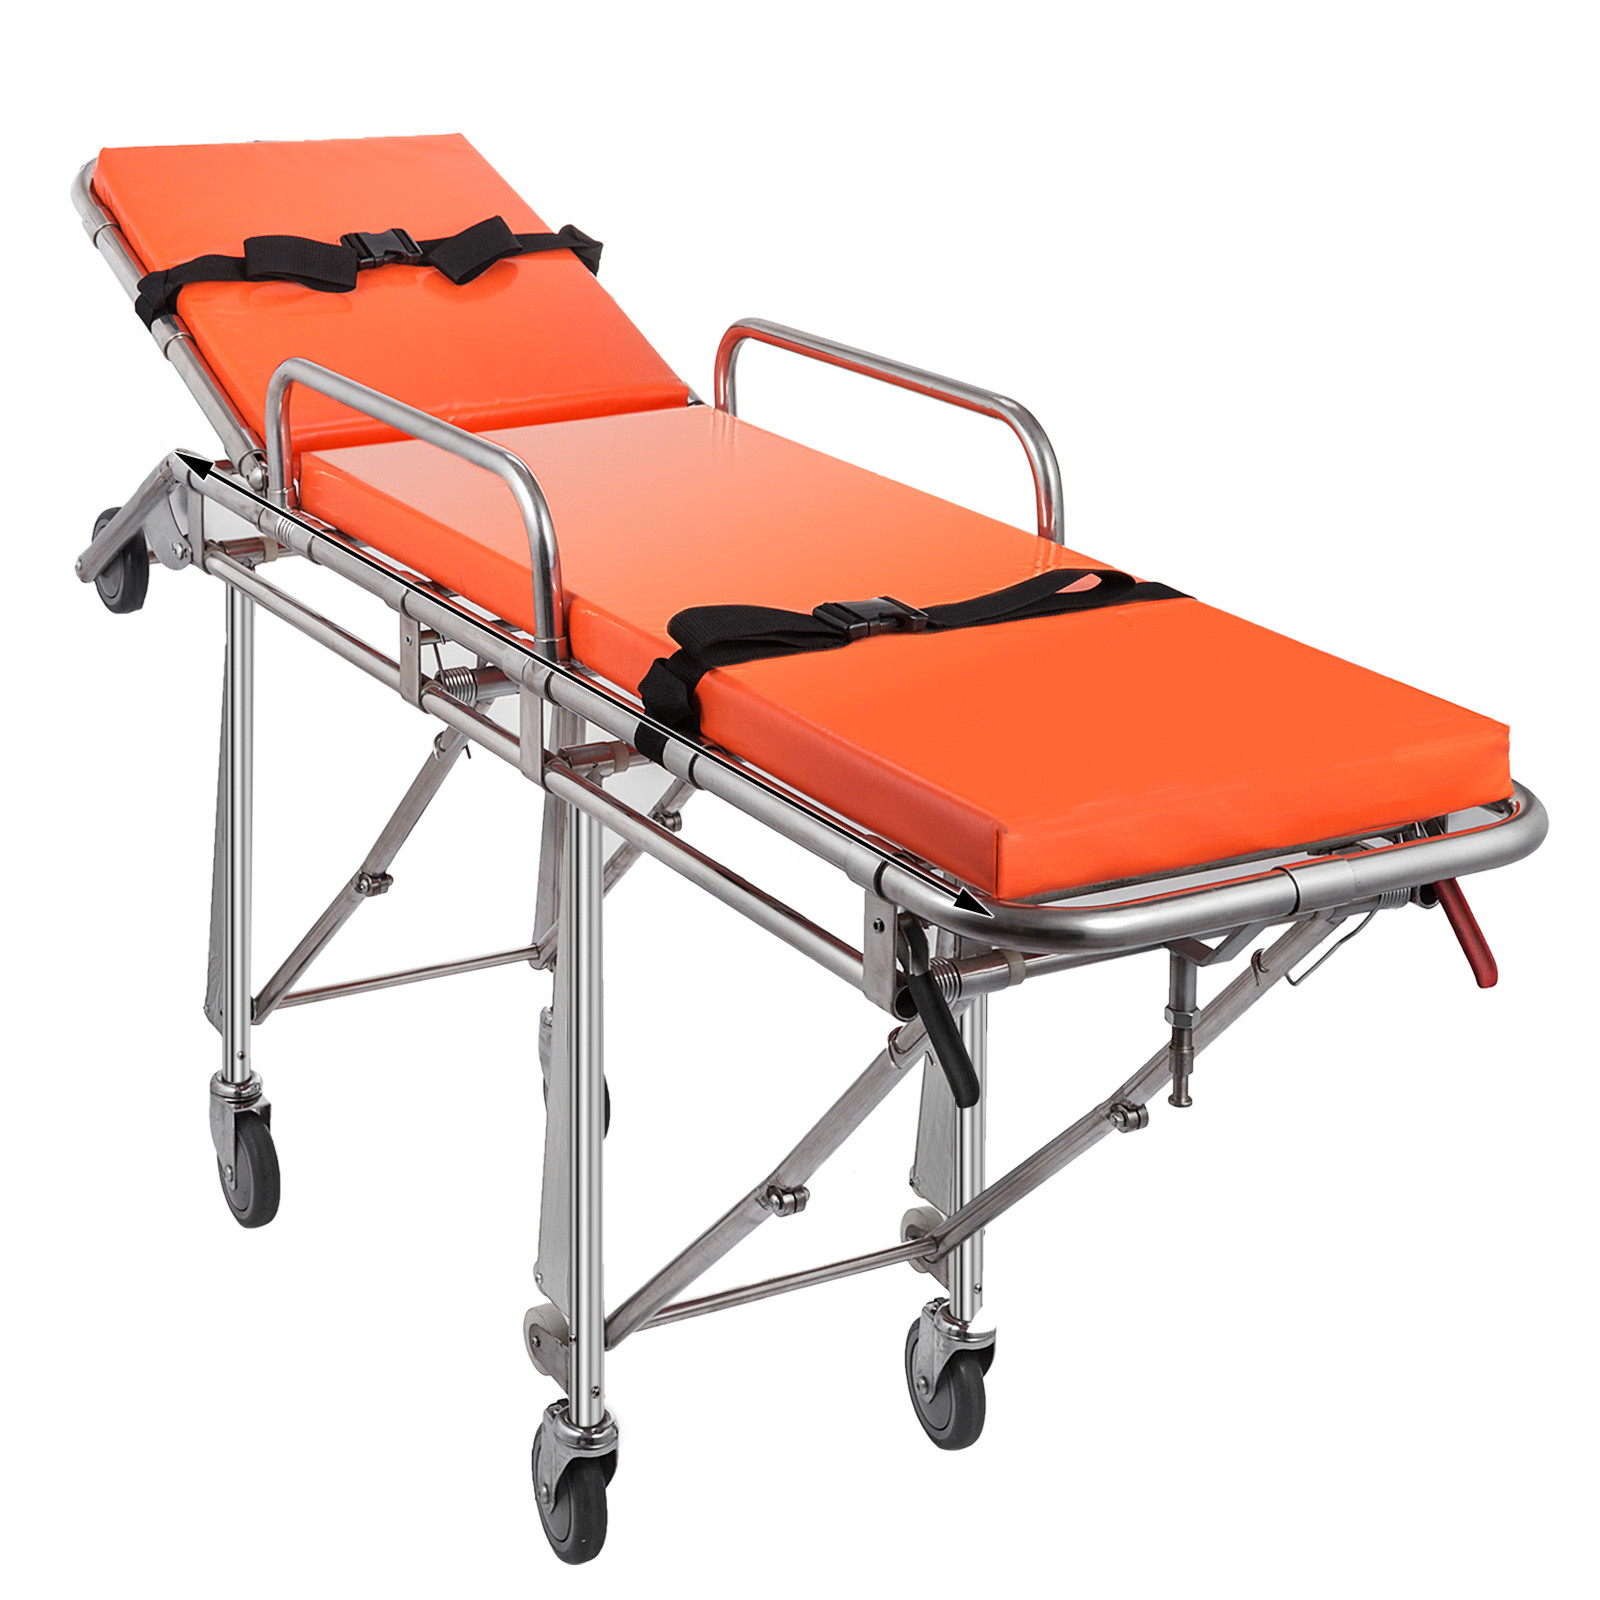 Kit-AE-18113-113 Medical Stretcher